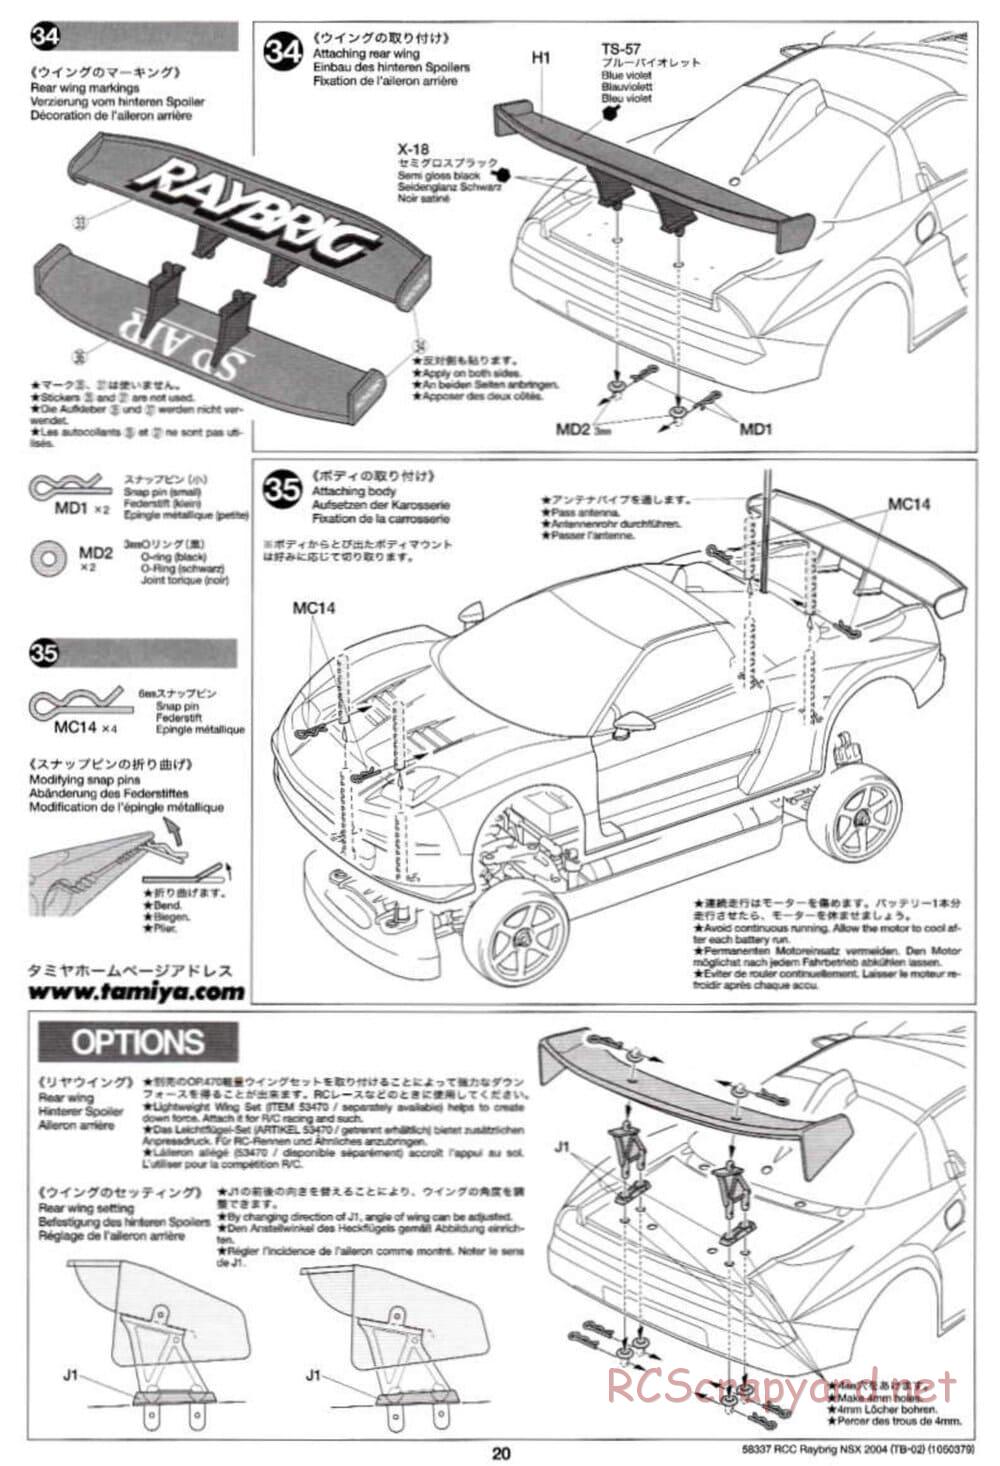 Tamiya - Raybrig NSX 2004 - TB-02 Chassis - Manual - Page 20